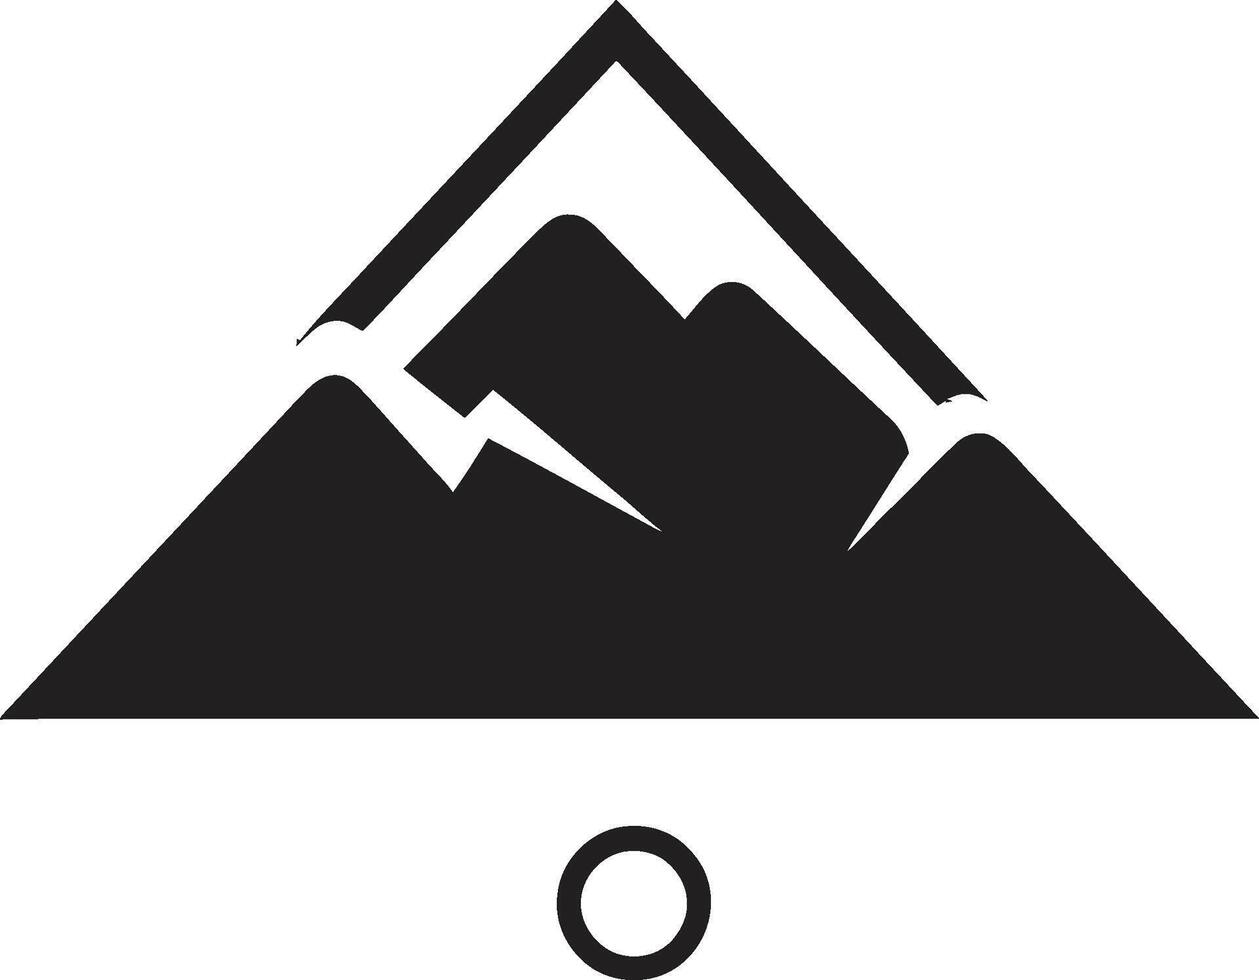 etéreo picos montanha símbolo áspero esplendor icônico montanha imagem vetor